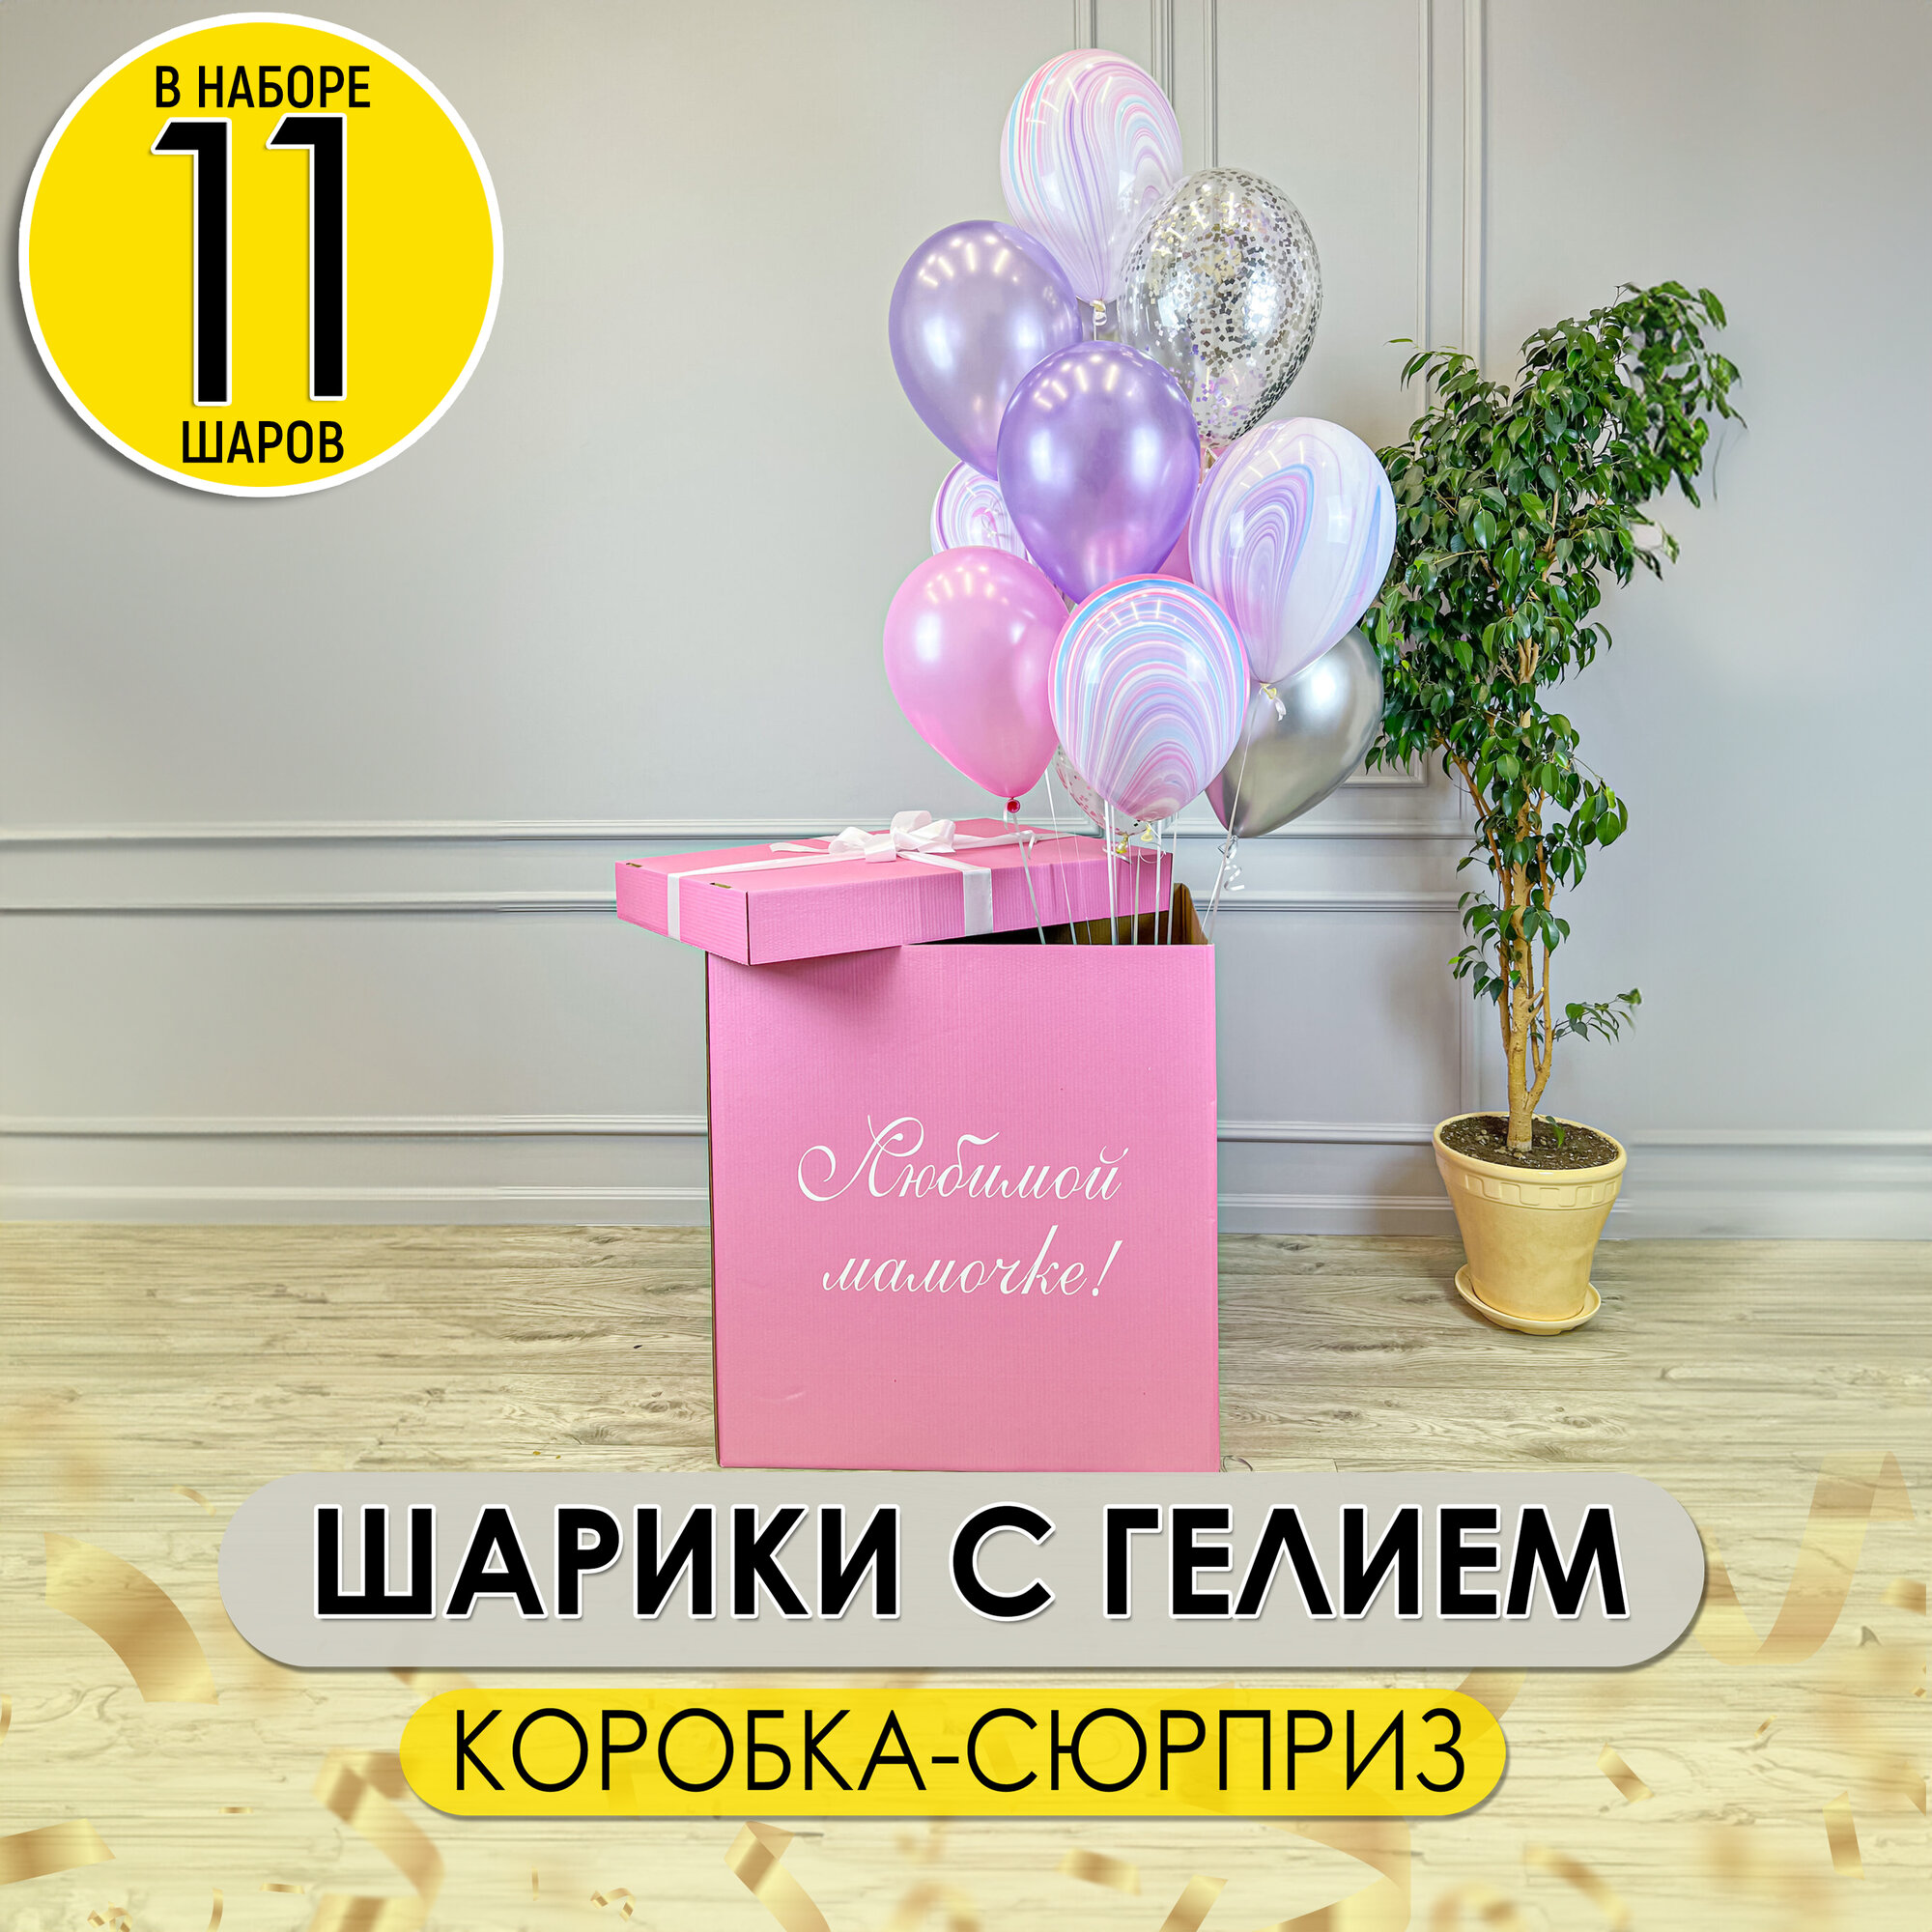 Розовая коробка сюрприз с любой надписью с гелевыми надутыми шарами на грузике, 11 шт.